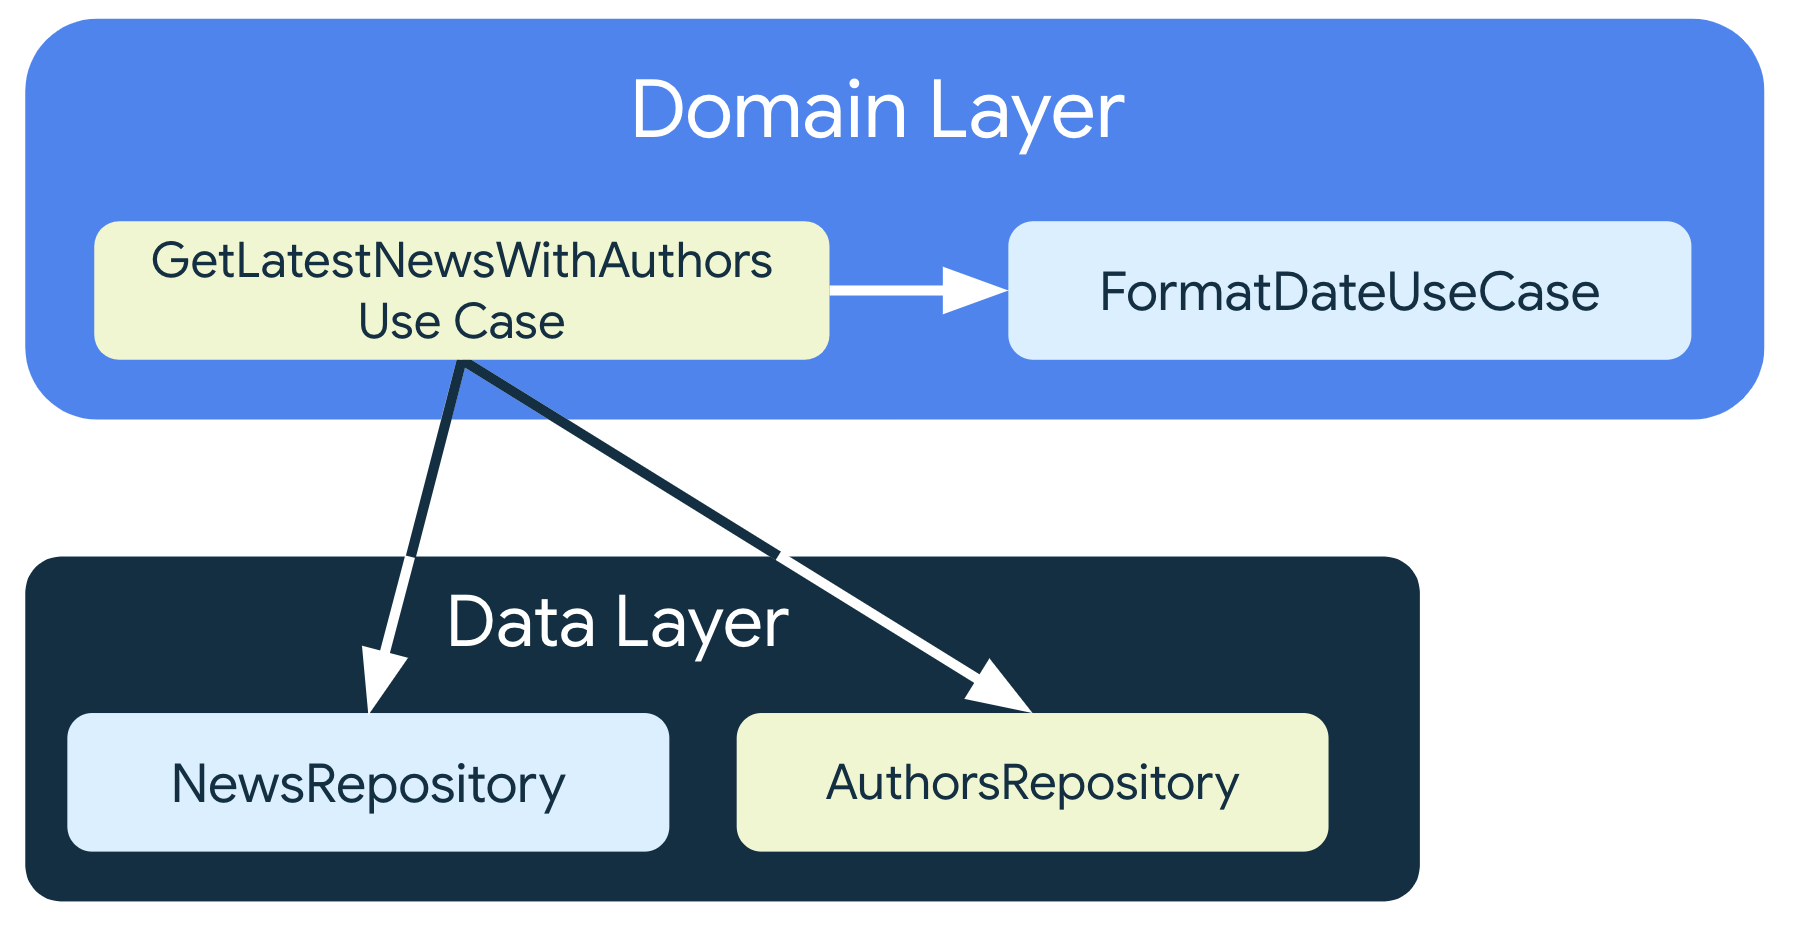 GetNewNewsWithauthorsUseCase phụ thuộc vào lớp lưu trữ từ
    lớp dữ liệu, nhưng cũng phụ thuộc vào FormatDataUseCase, một lớp trường hợp sử dụng
    khác cũng có trong lớp miền.